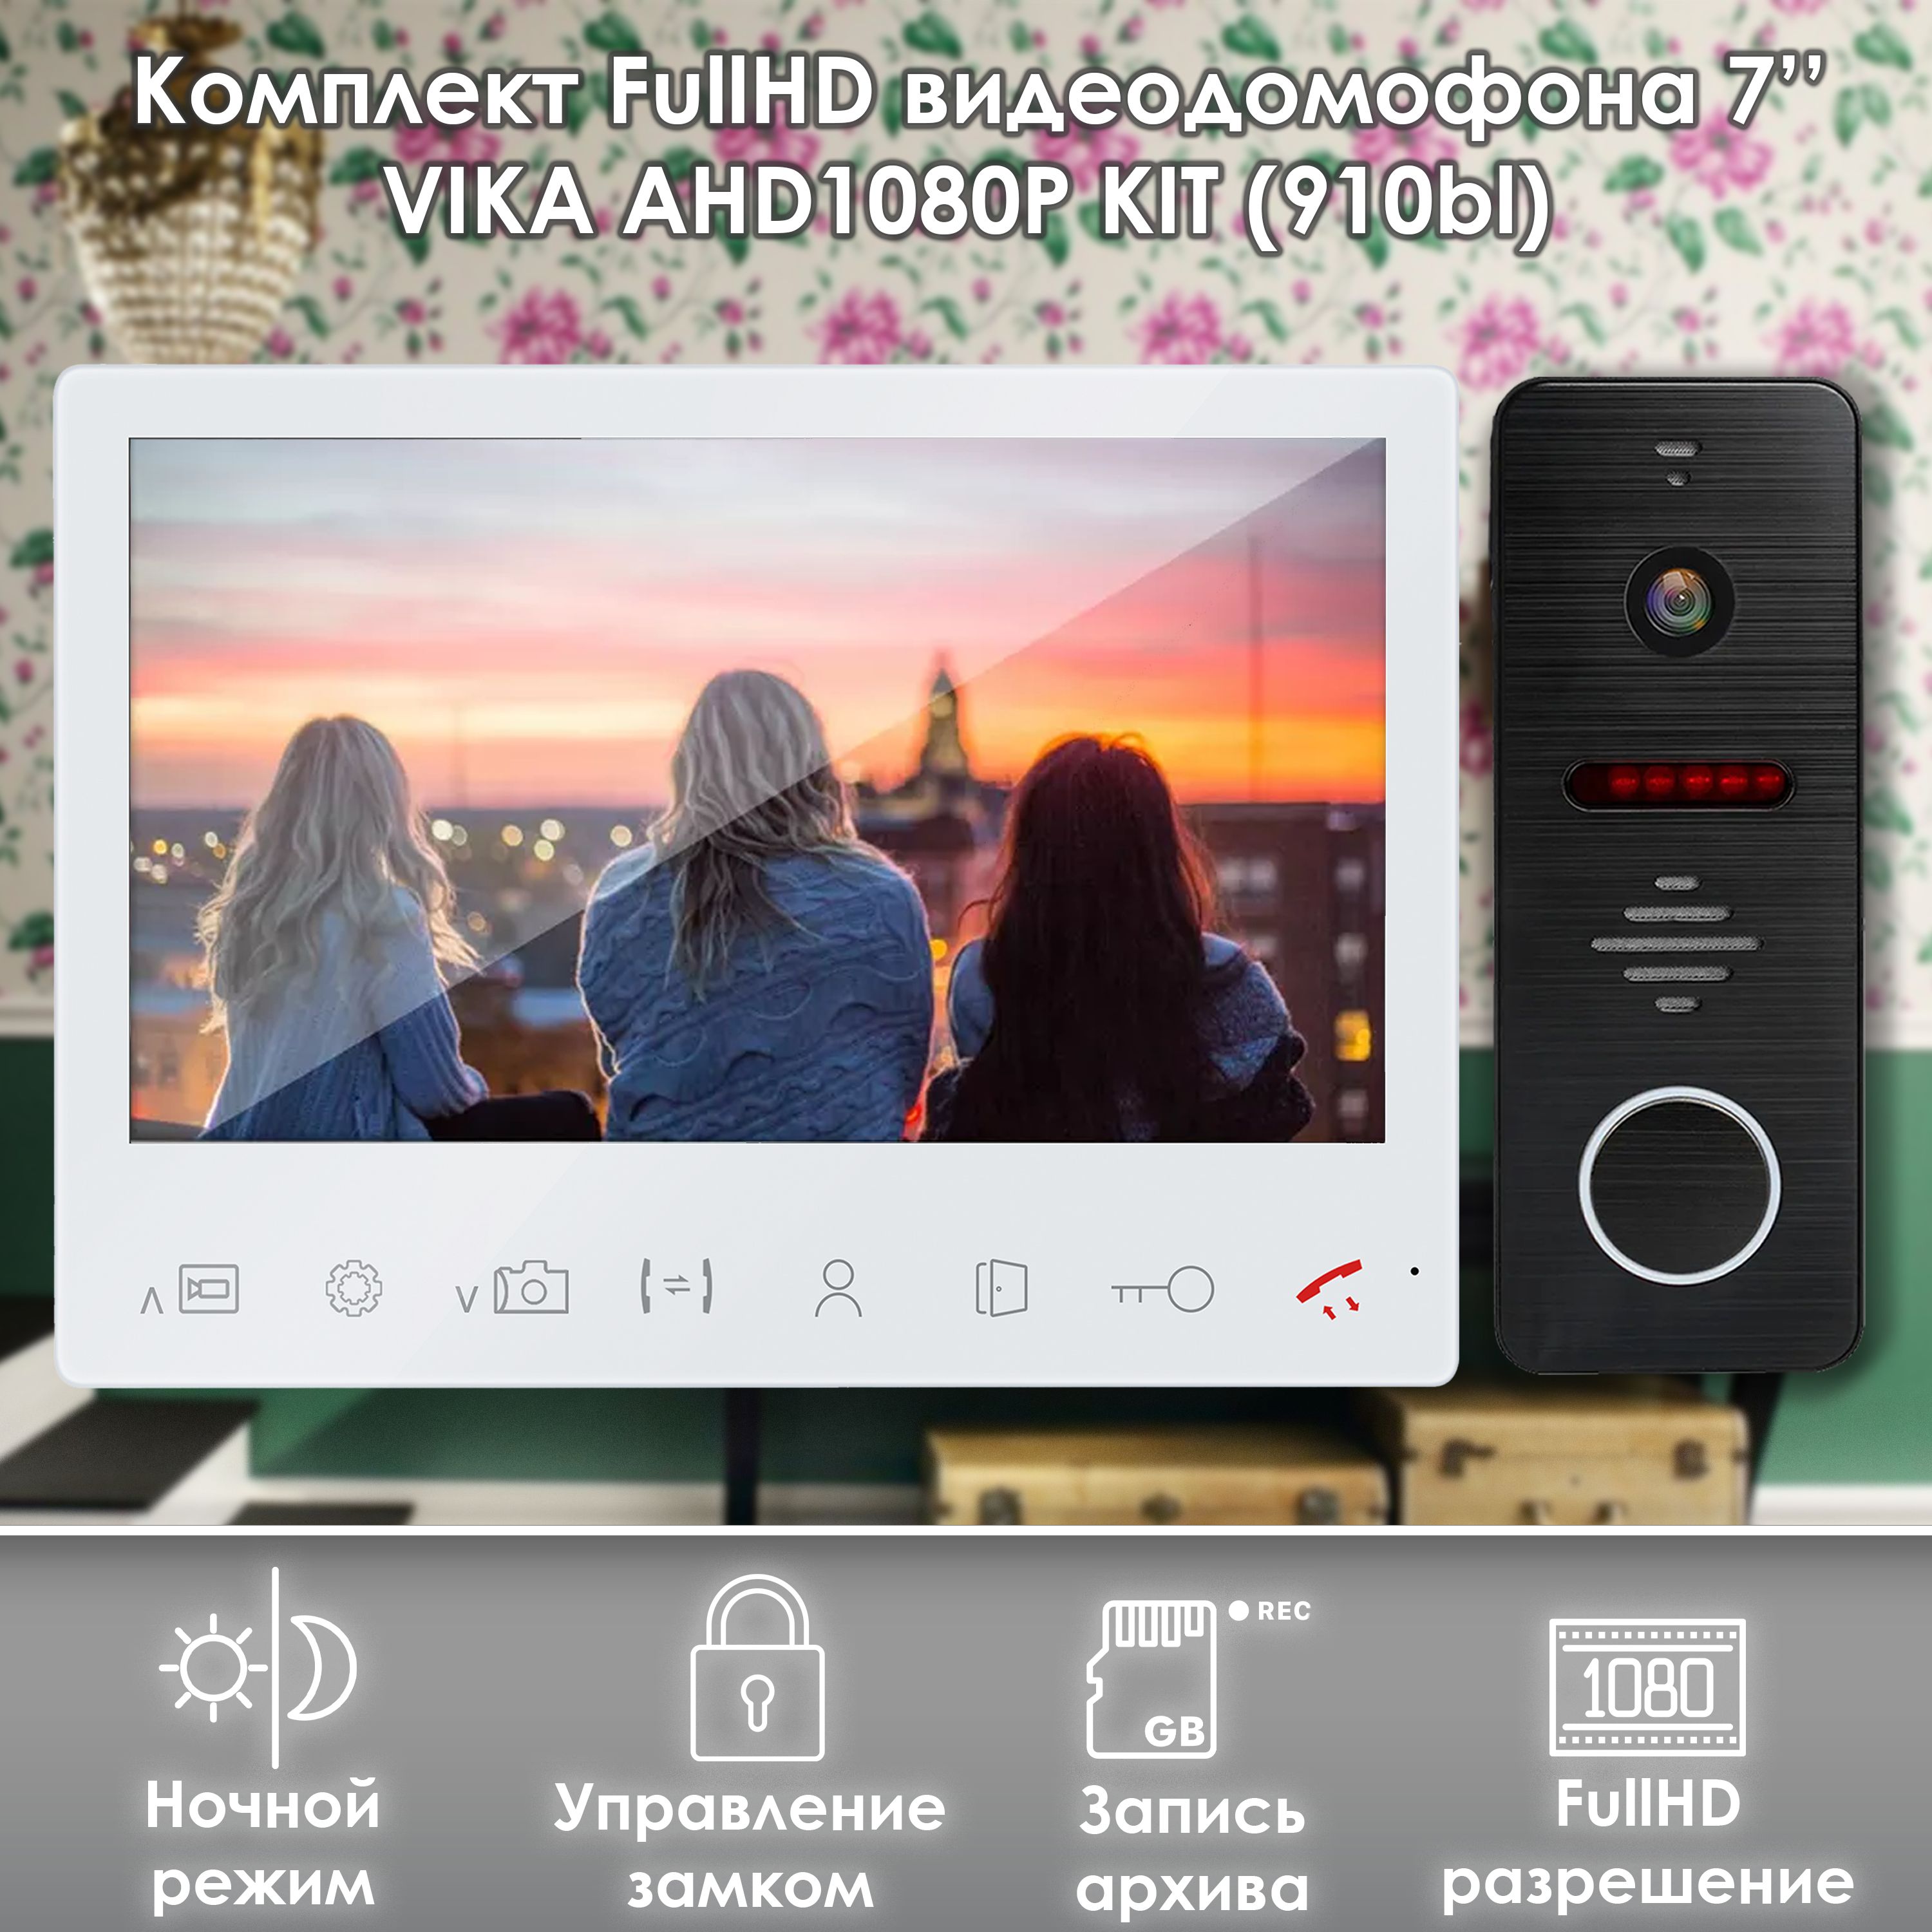 комплект гибридной видеодомофонии включаются устройства ds d100p vdp h3212w 1 блок питания 12в работа с hik connect Комплект видеодомофона Alfavision Vika-KIT (910bl) Full HD 7 дюймов